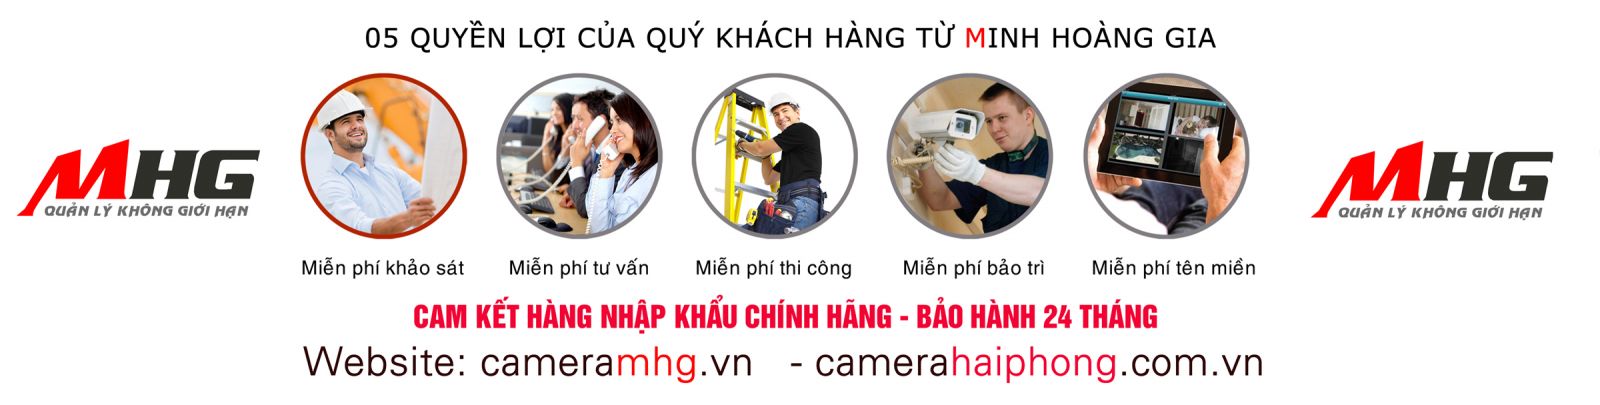 CameraMHG cam kết quyền lợi cho khách hàng